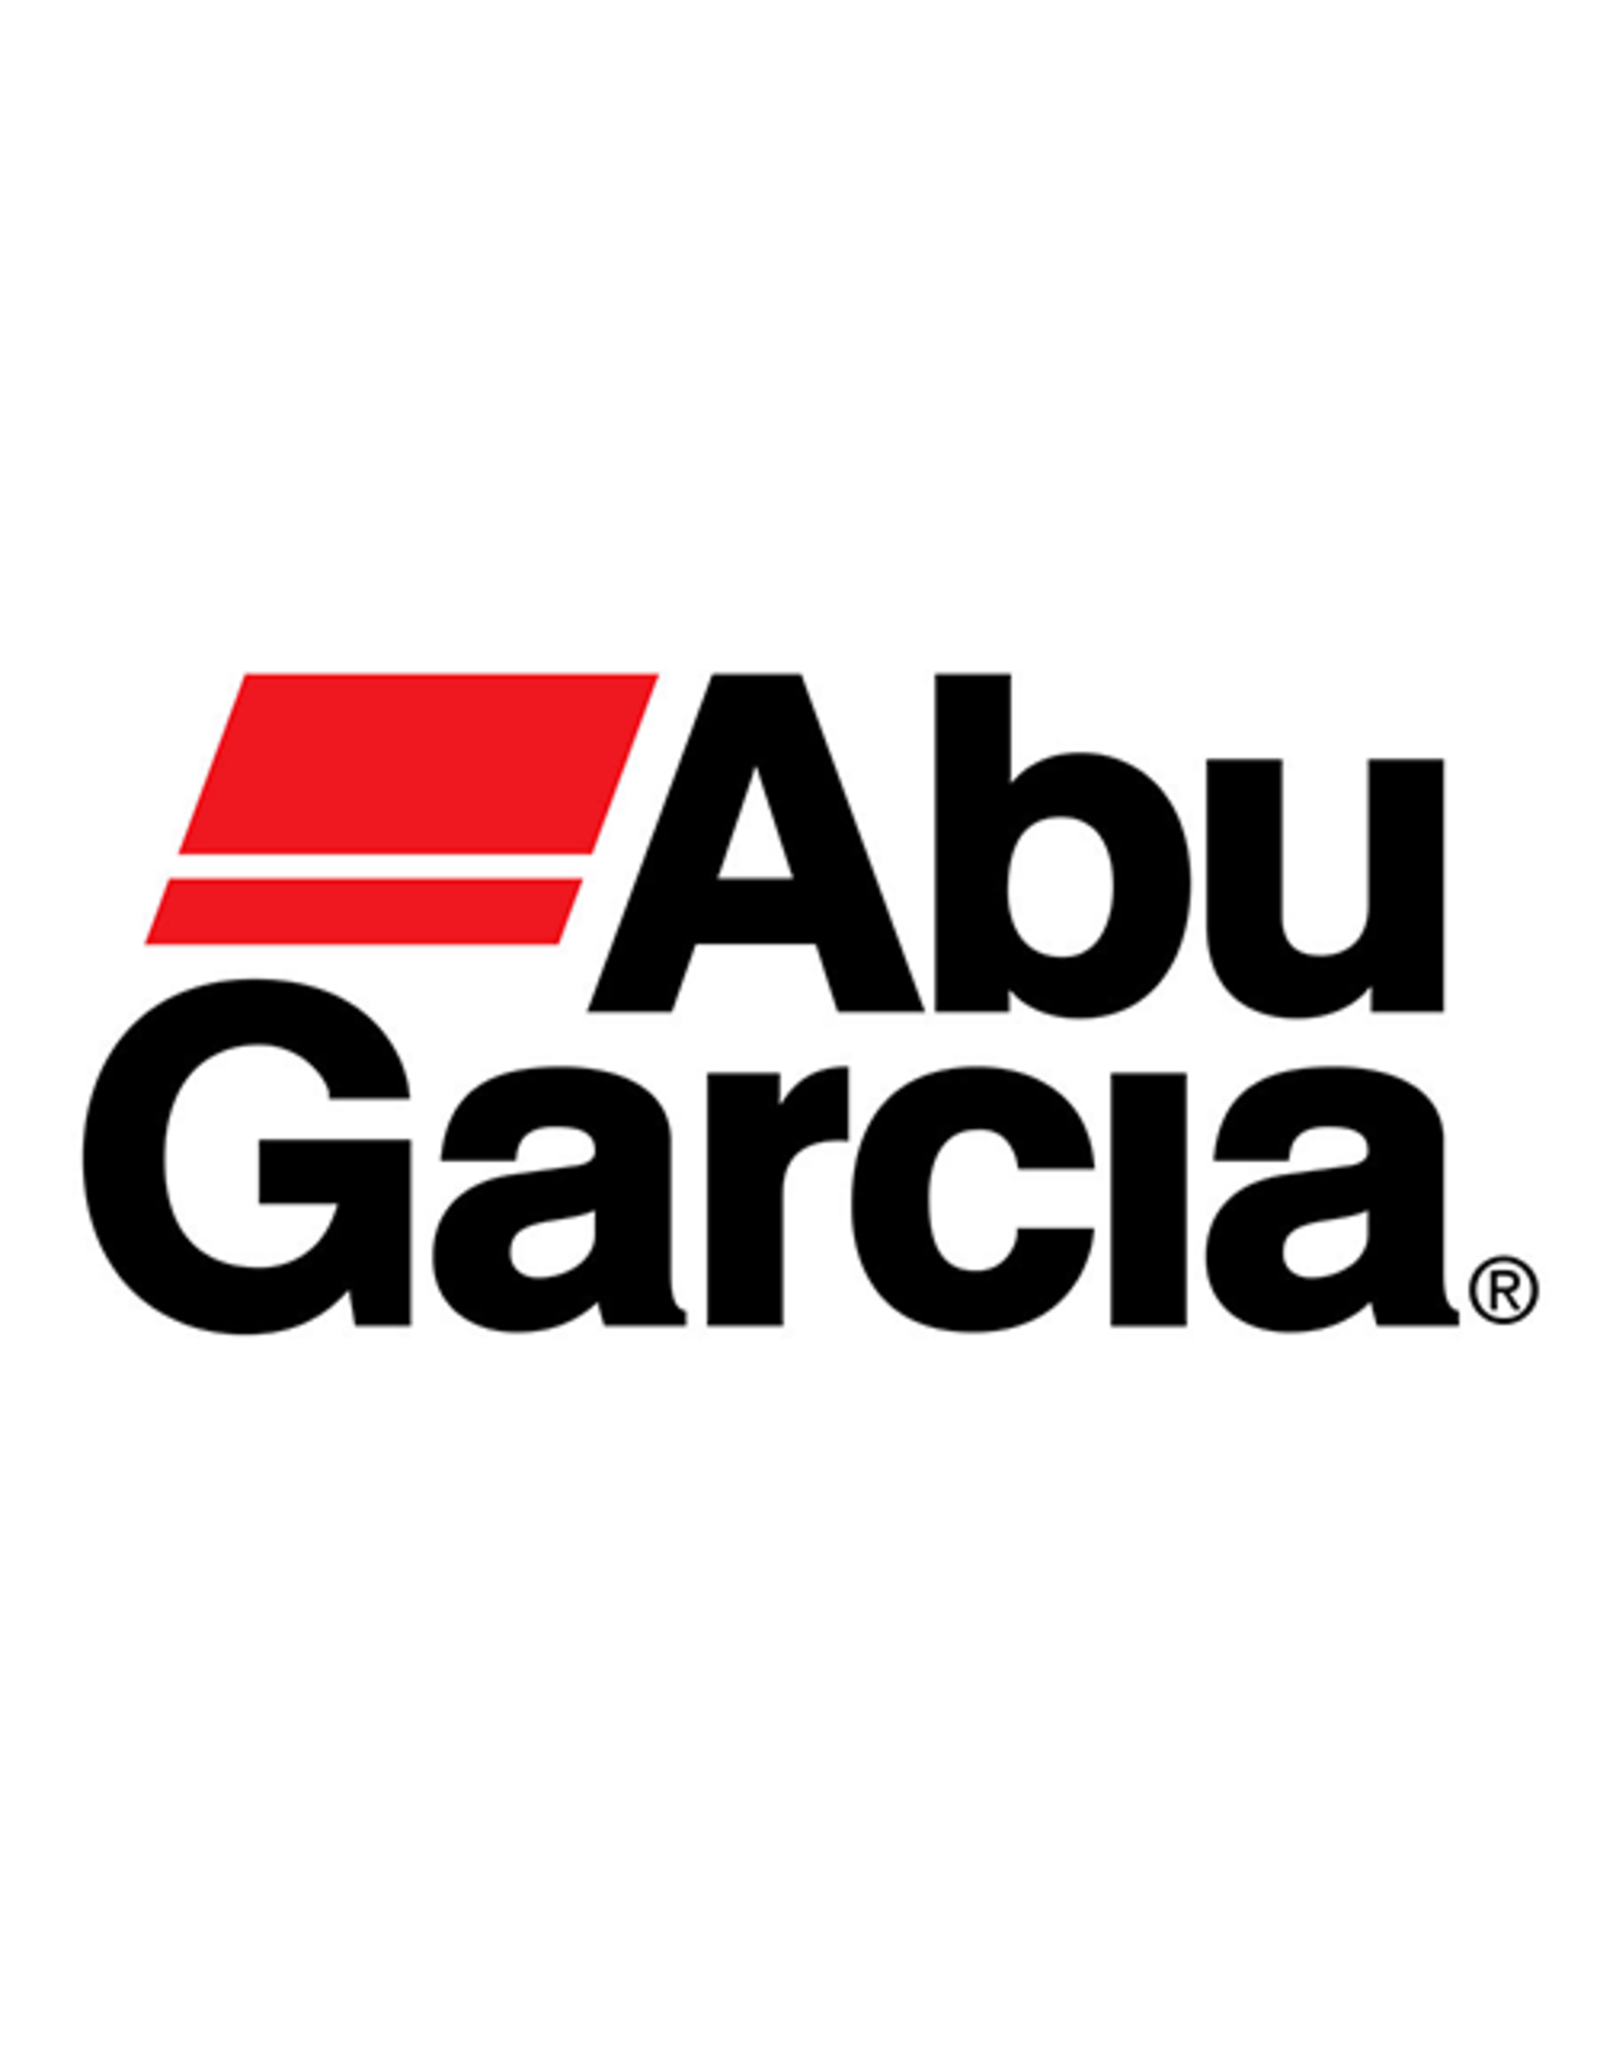 Abu Garcia 811665  FRAME